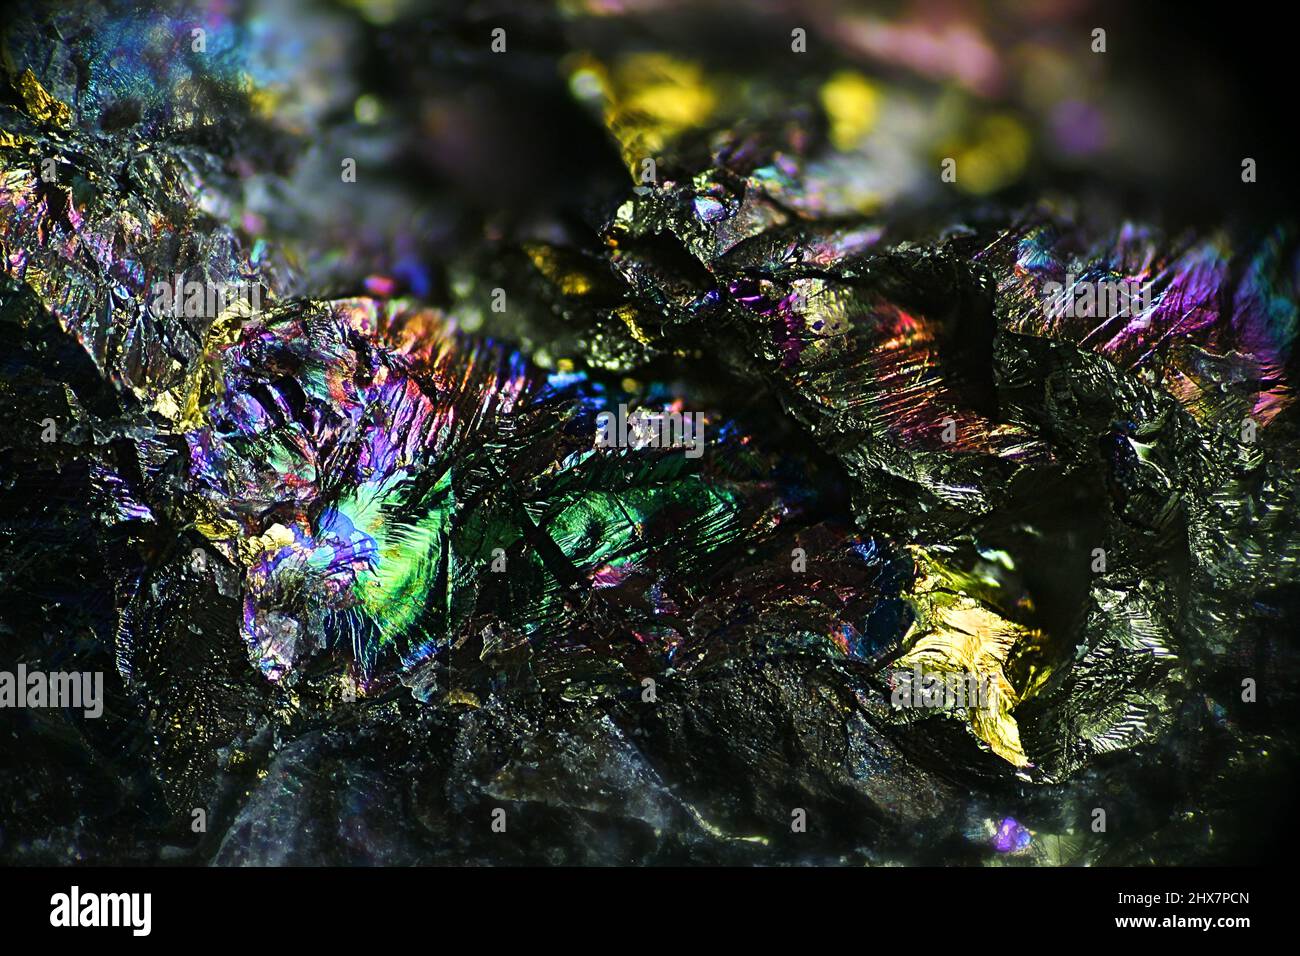 Dies ist ein irisierendes, farbenprächtiges Kupfererz, das Pfauenerz oder Chalkopyrit aus der Kupfermine Virtasalmi in Finnland genannt wird. Mikroskopbild. Stockfoto